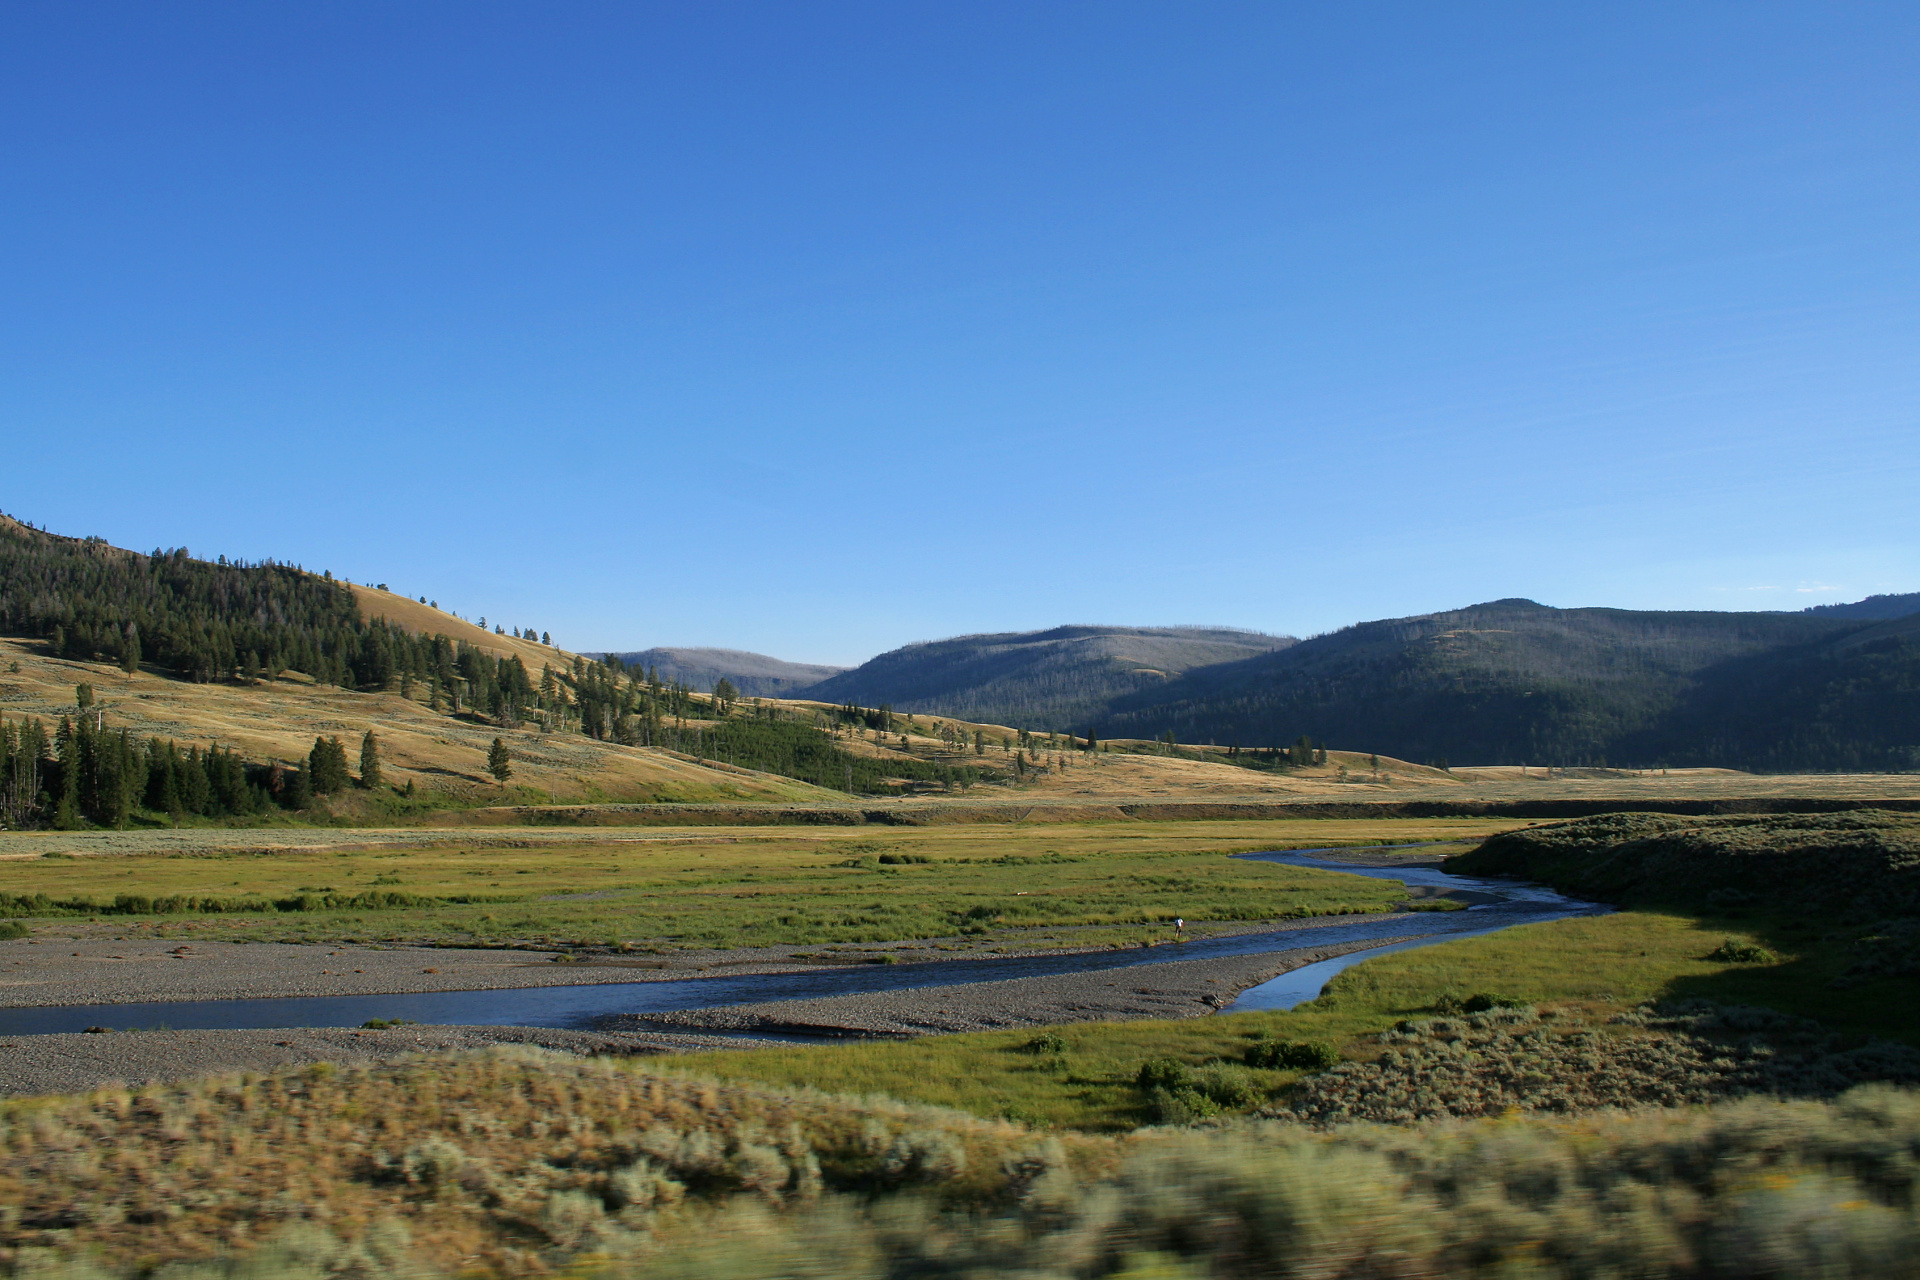 Lamar River (Podróże » USA: Na ziemi Czejenów » Wielka Podróż » Park Narodowy Yellowstone)